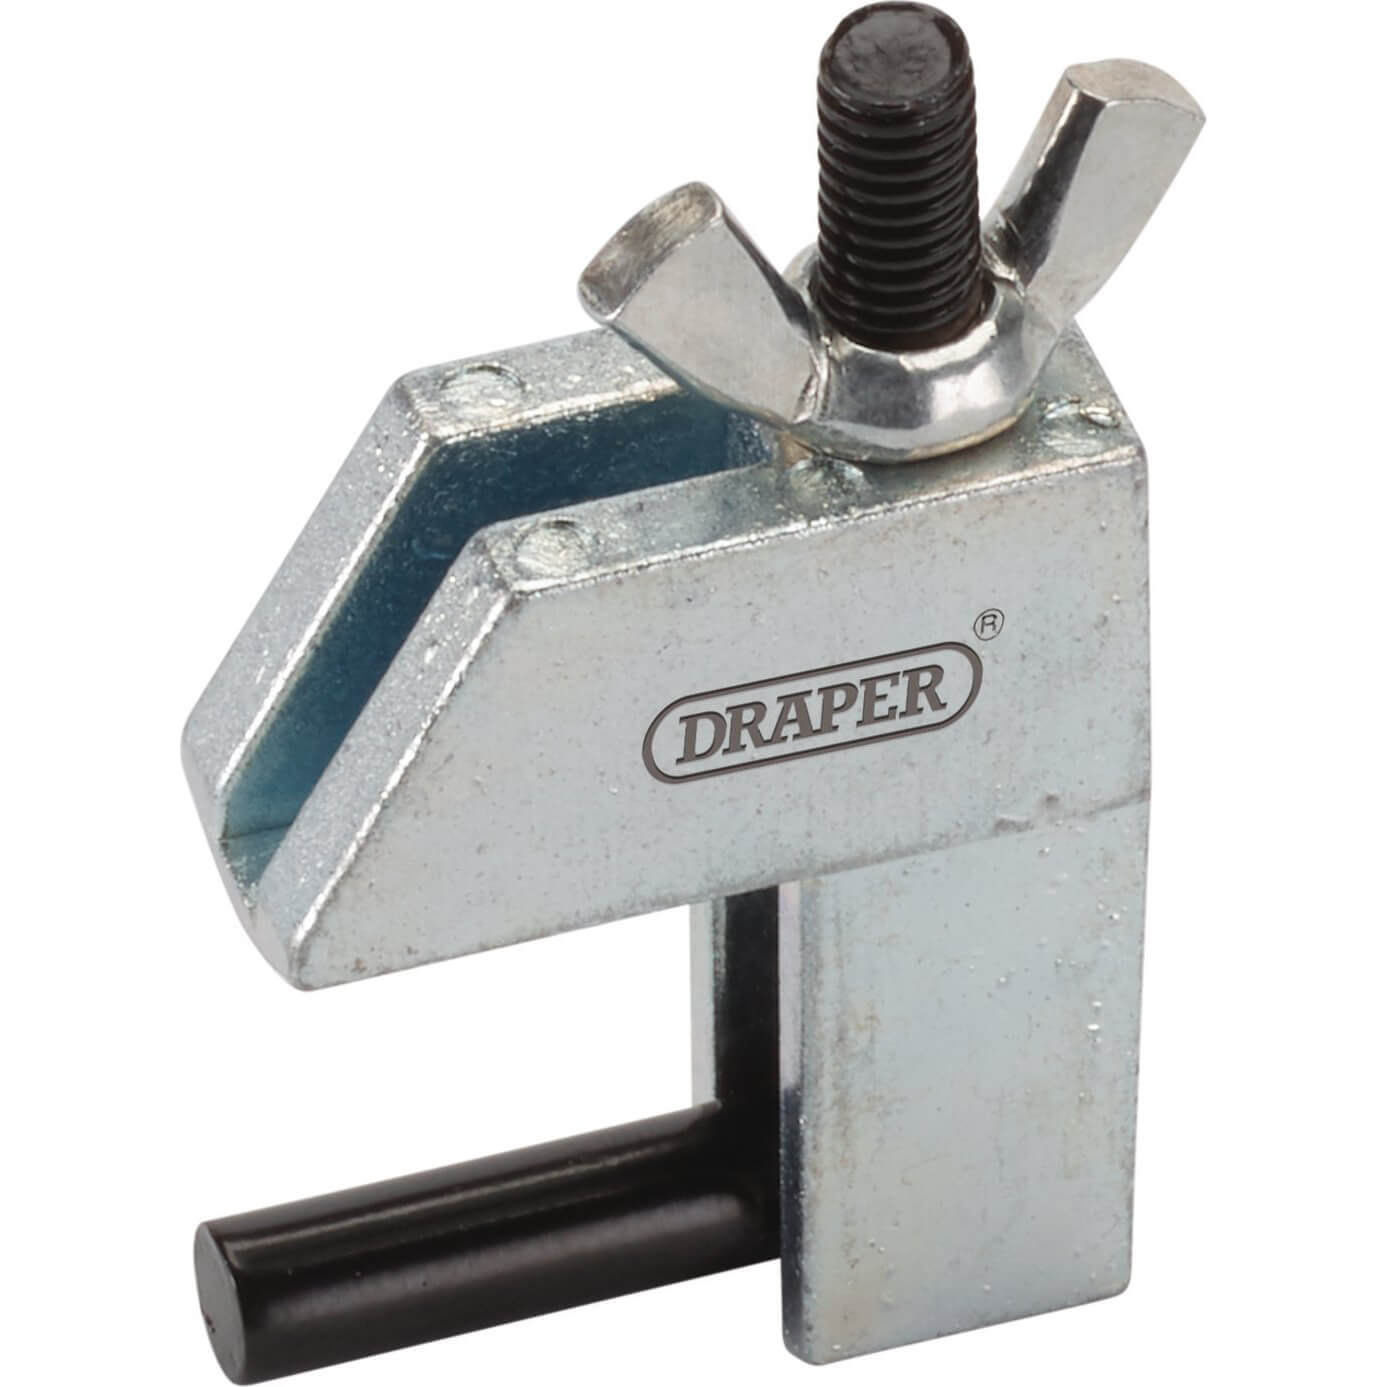 Image of Draper 2 Piece Hose Clamp Set